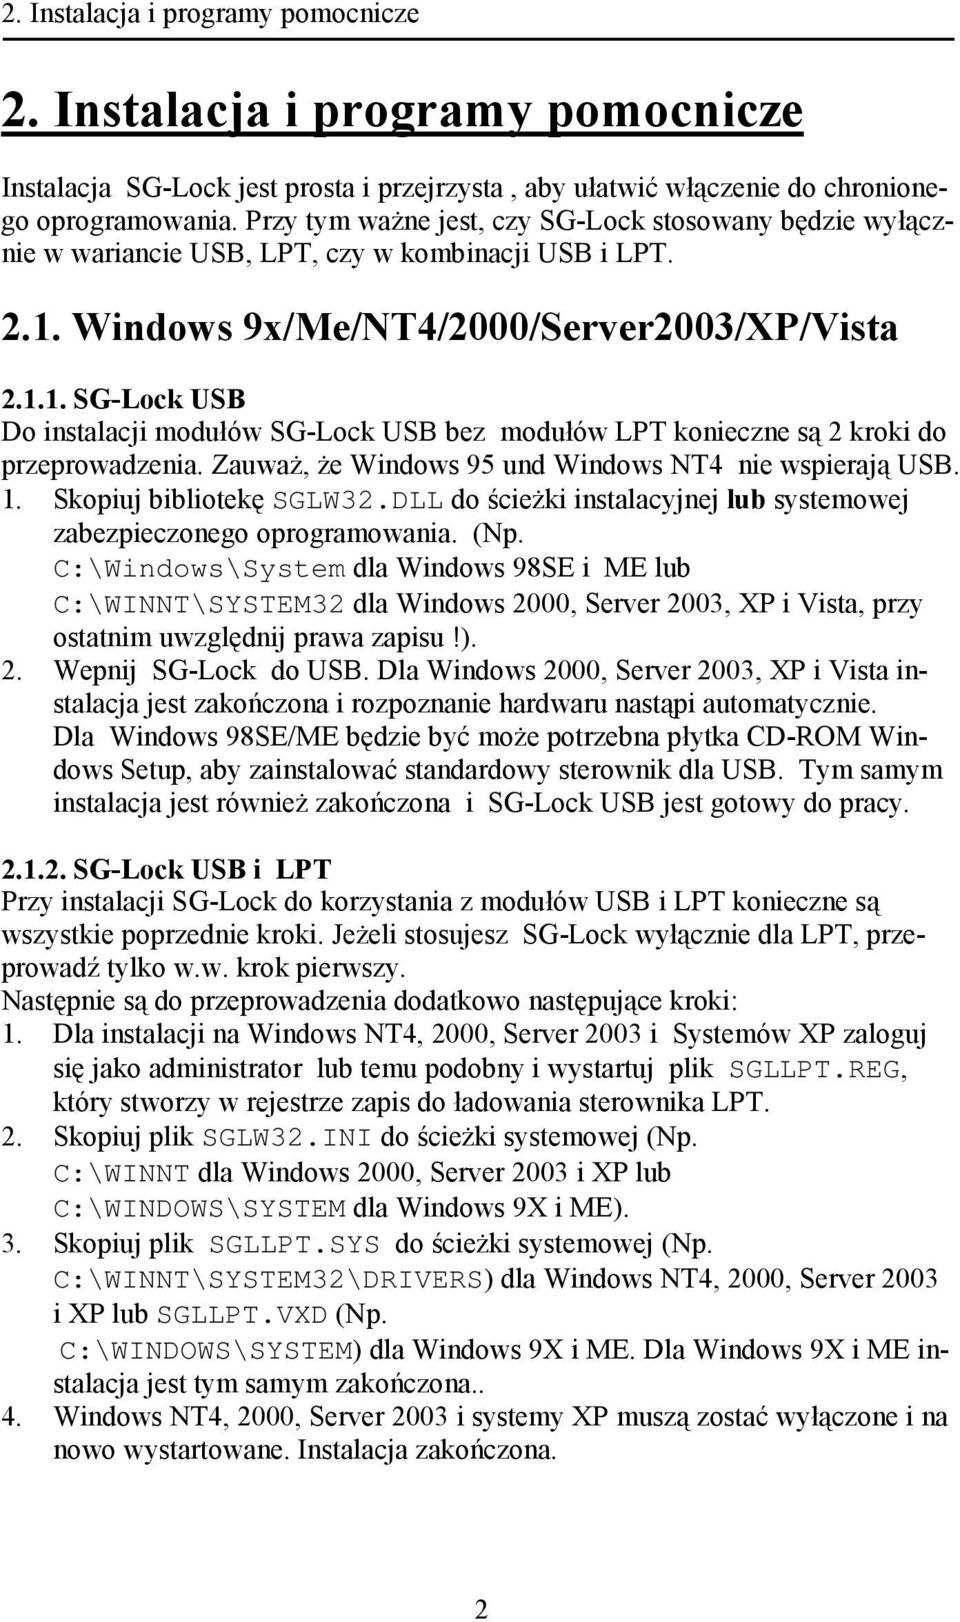 Windows 9x/Me/NT4/2000/Server2003/XP/Vista 2.1.1. SG-Lock USB Do instalacji modułów SG-Lock USB bez modułów LPT konieczne są 2 kroki do przeprowadzenia.